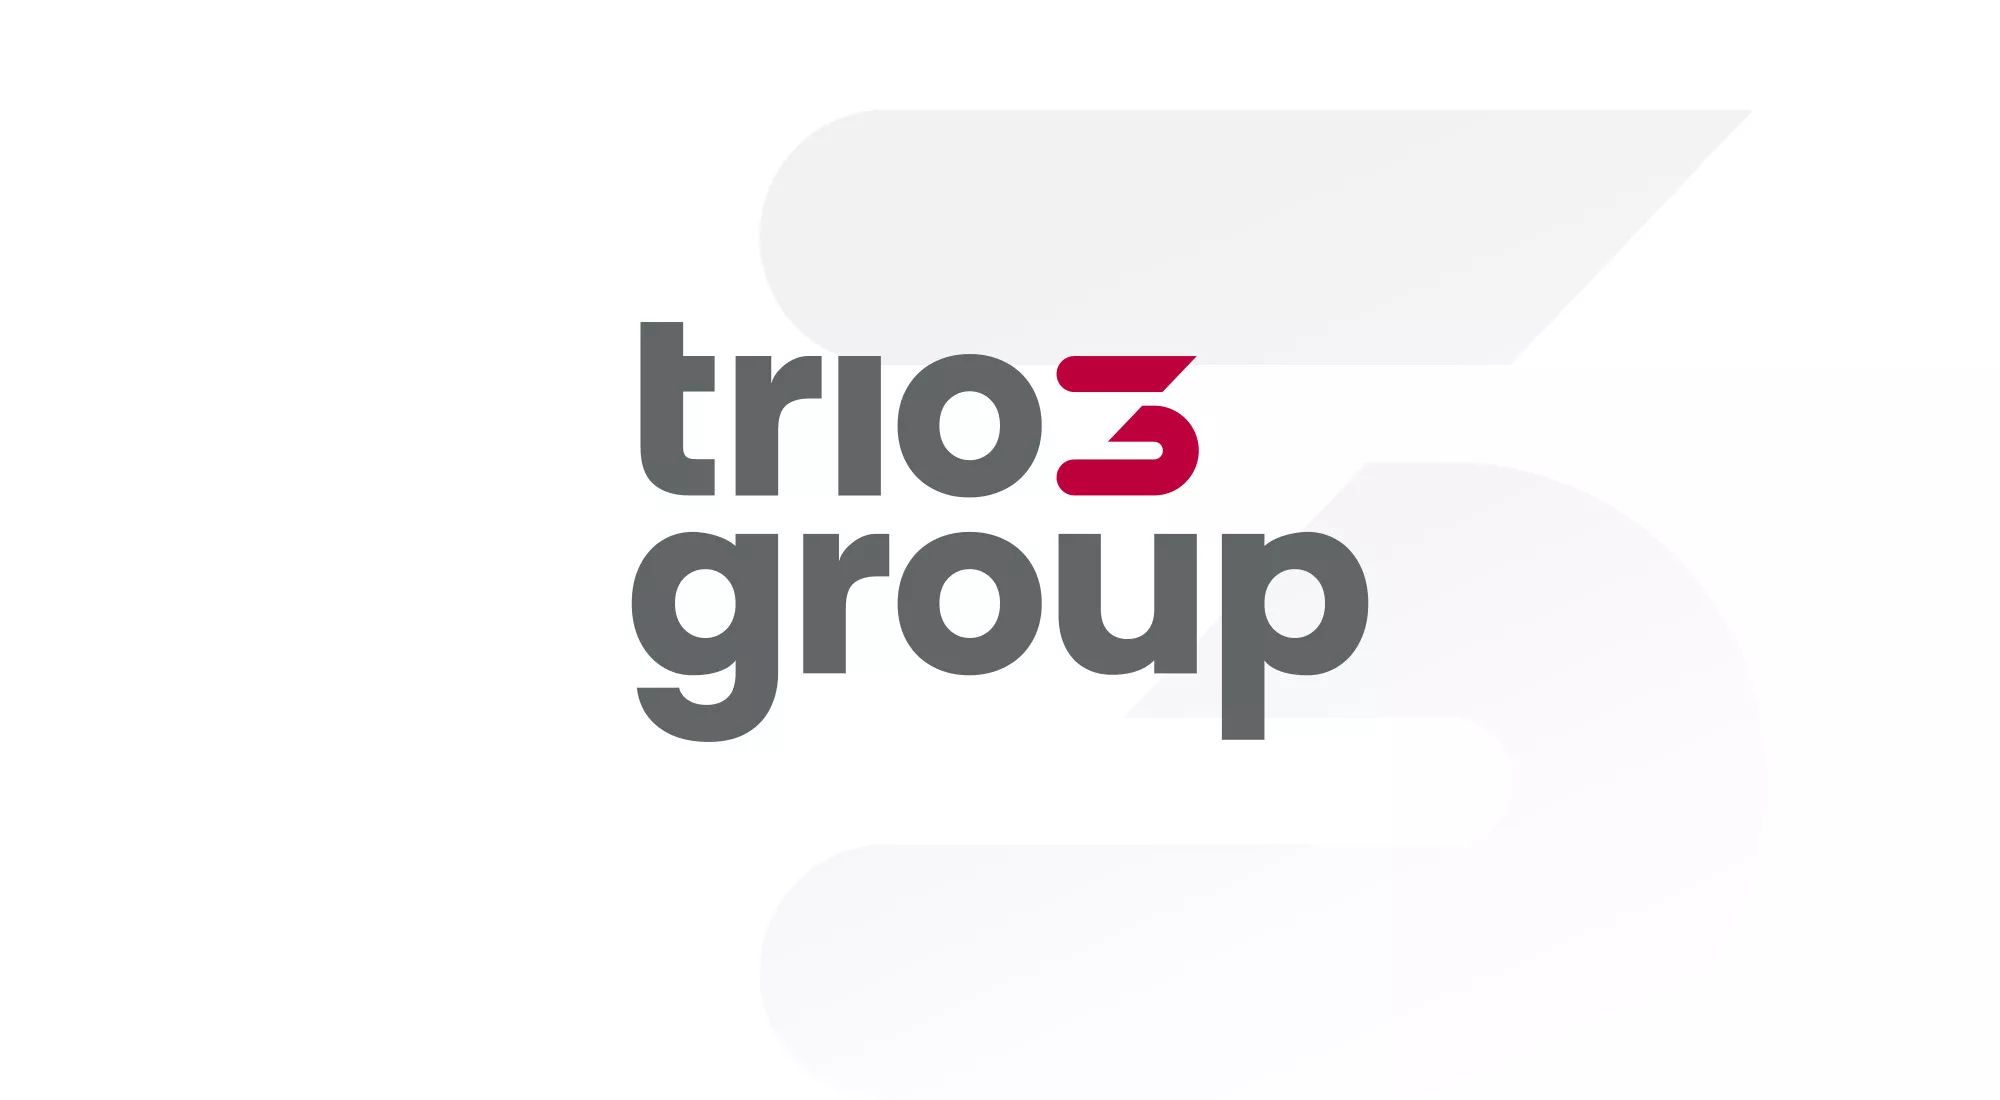 Neues trio-group Logo